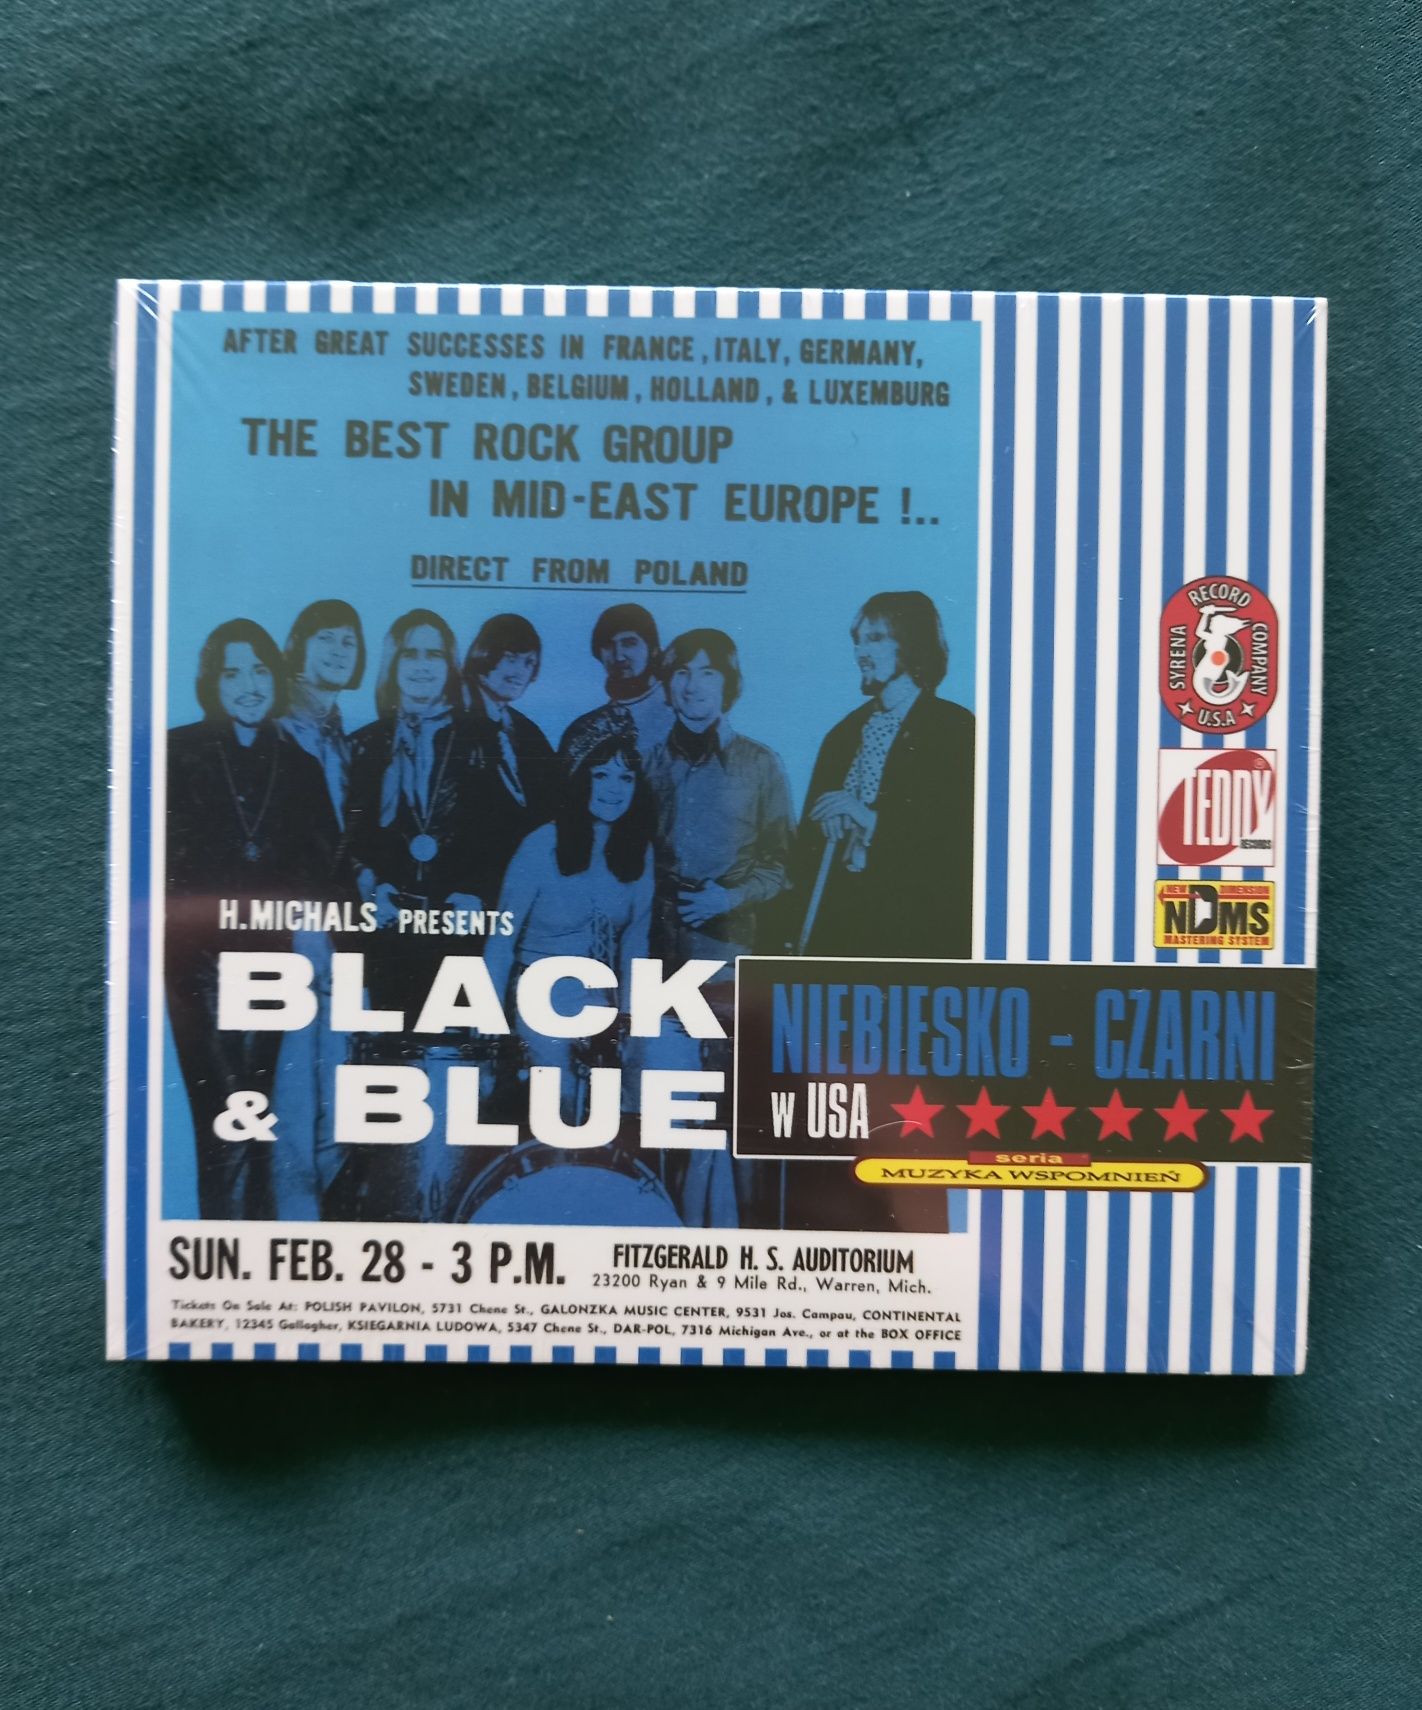 Niebiesko-Czarni w USA płyta CD Teddy Records